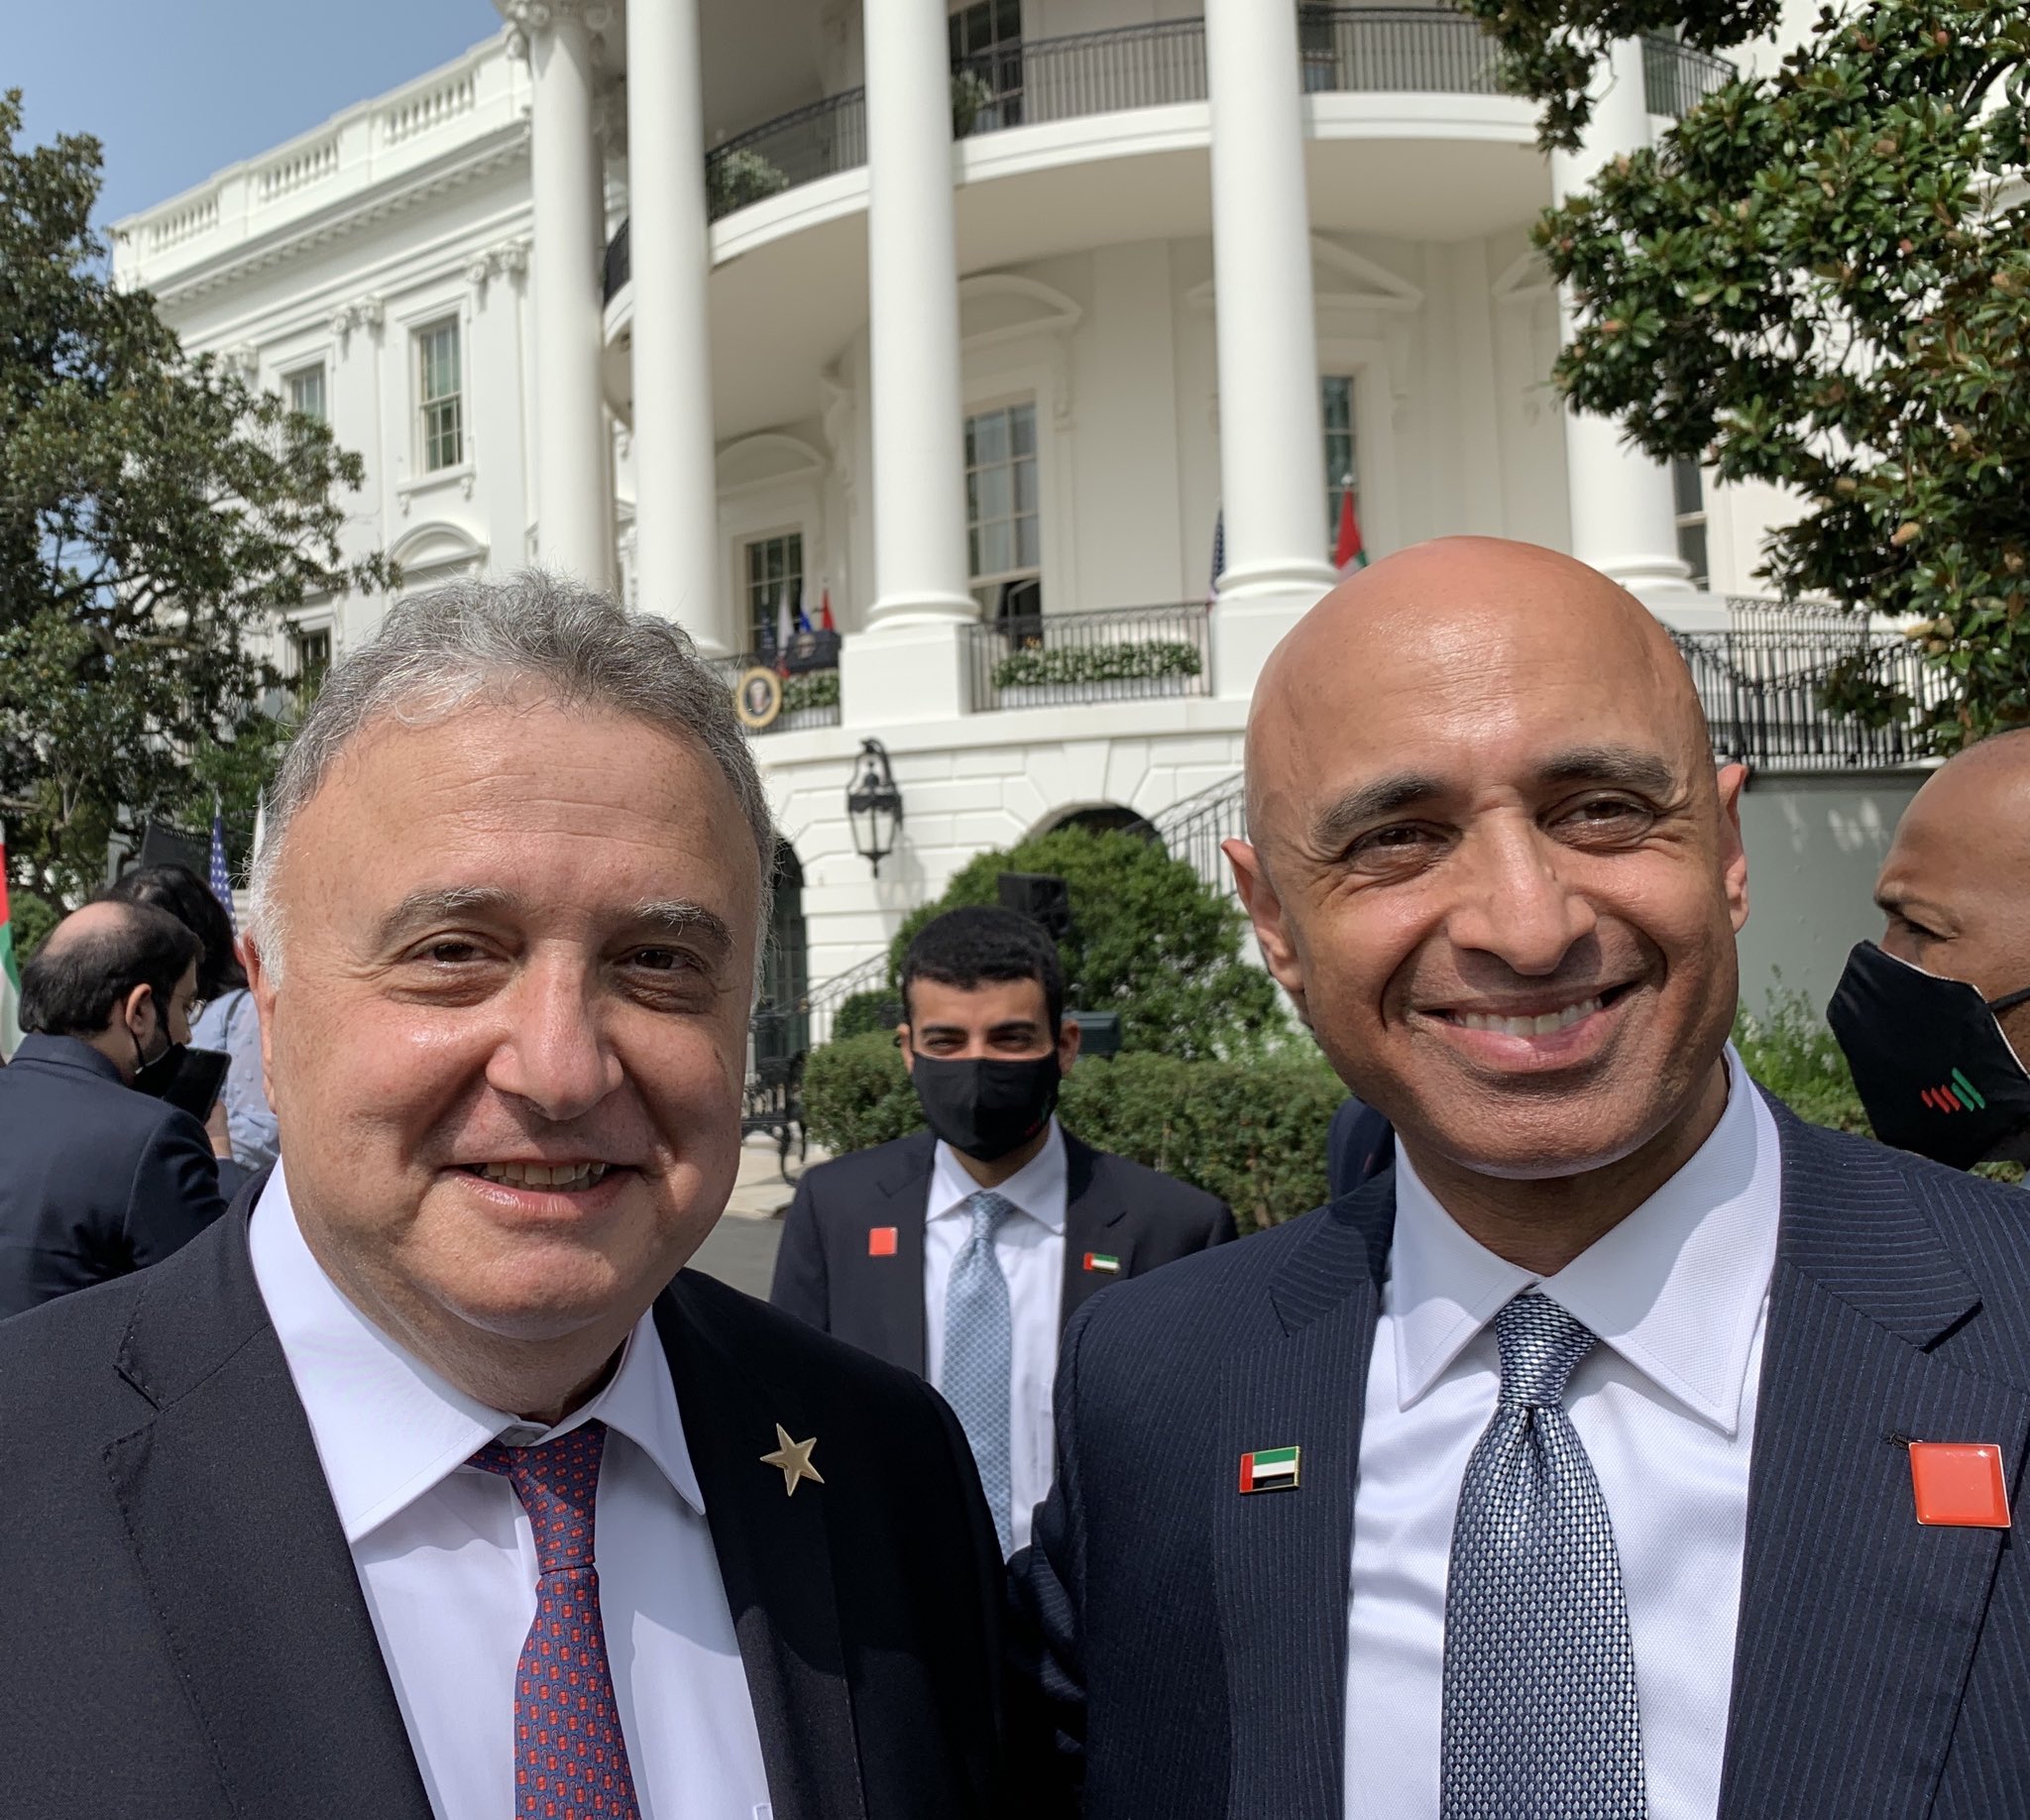 Israeli Ambassador to Germany Jeremy Issacharoff, left, with UAE Ambassador to the US Yousef al-Otaiba, at the White House, September 15, 2020 (courtesy)